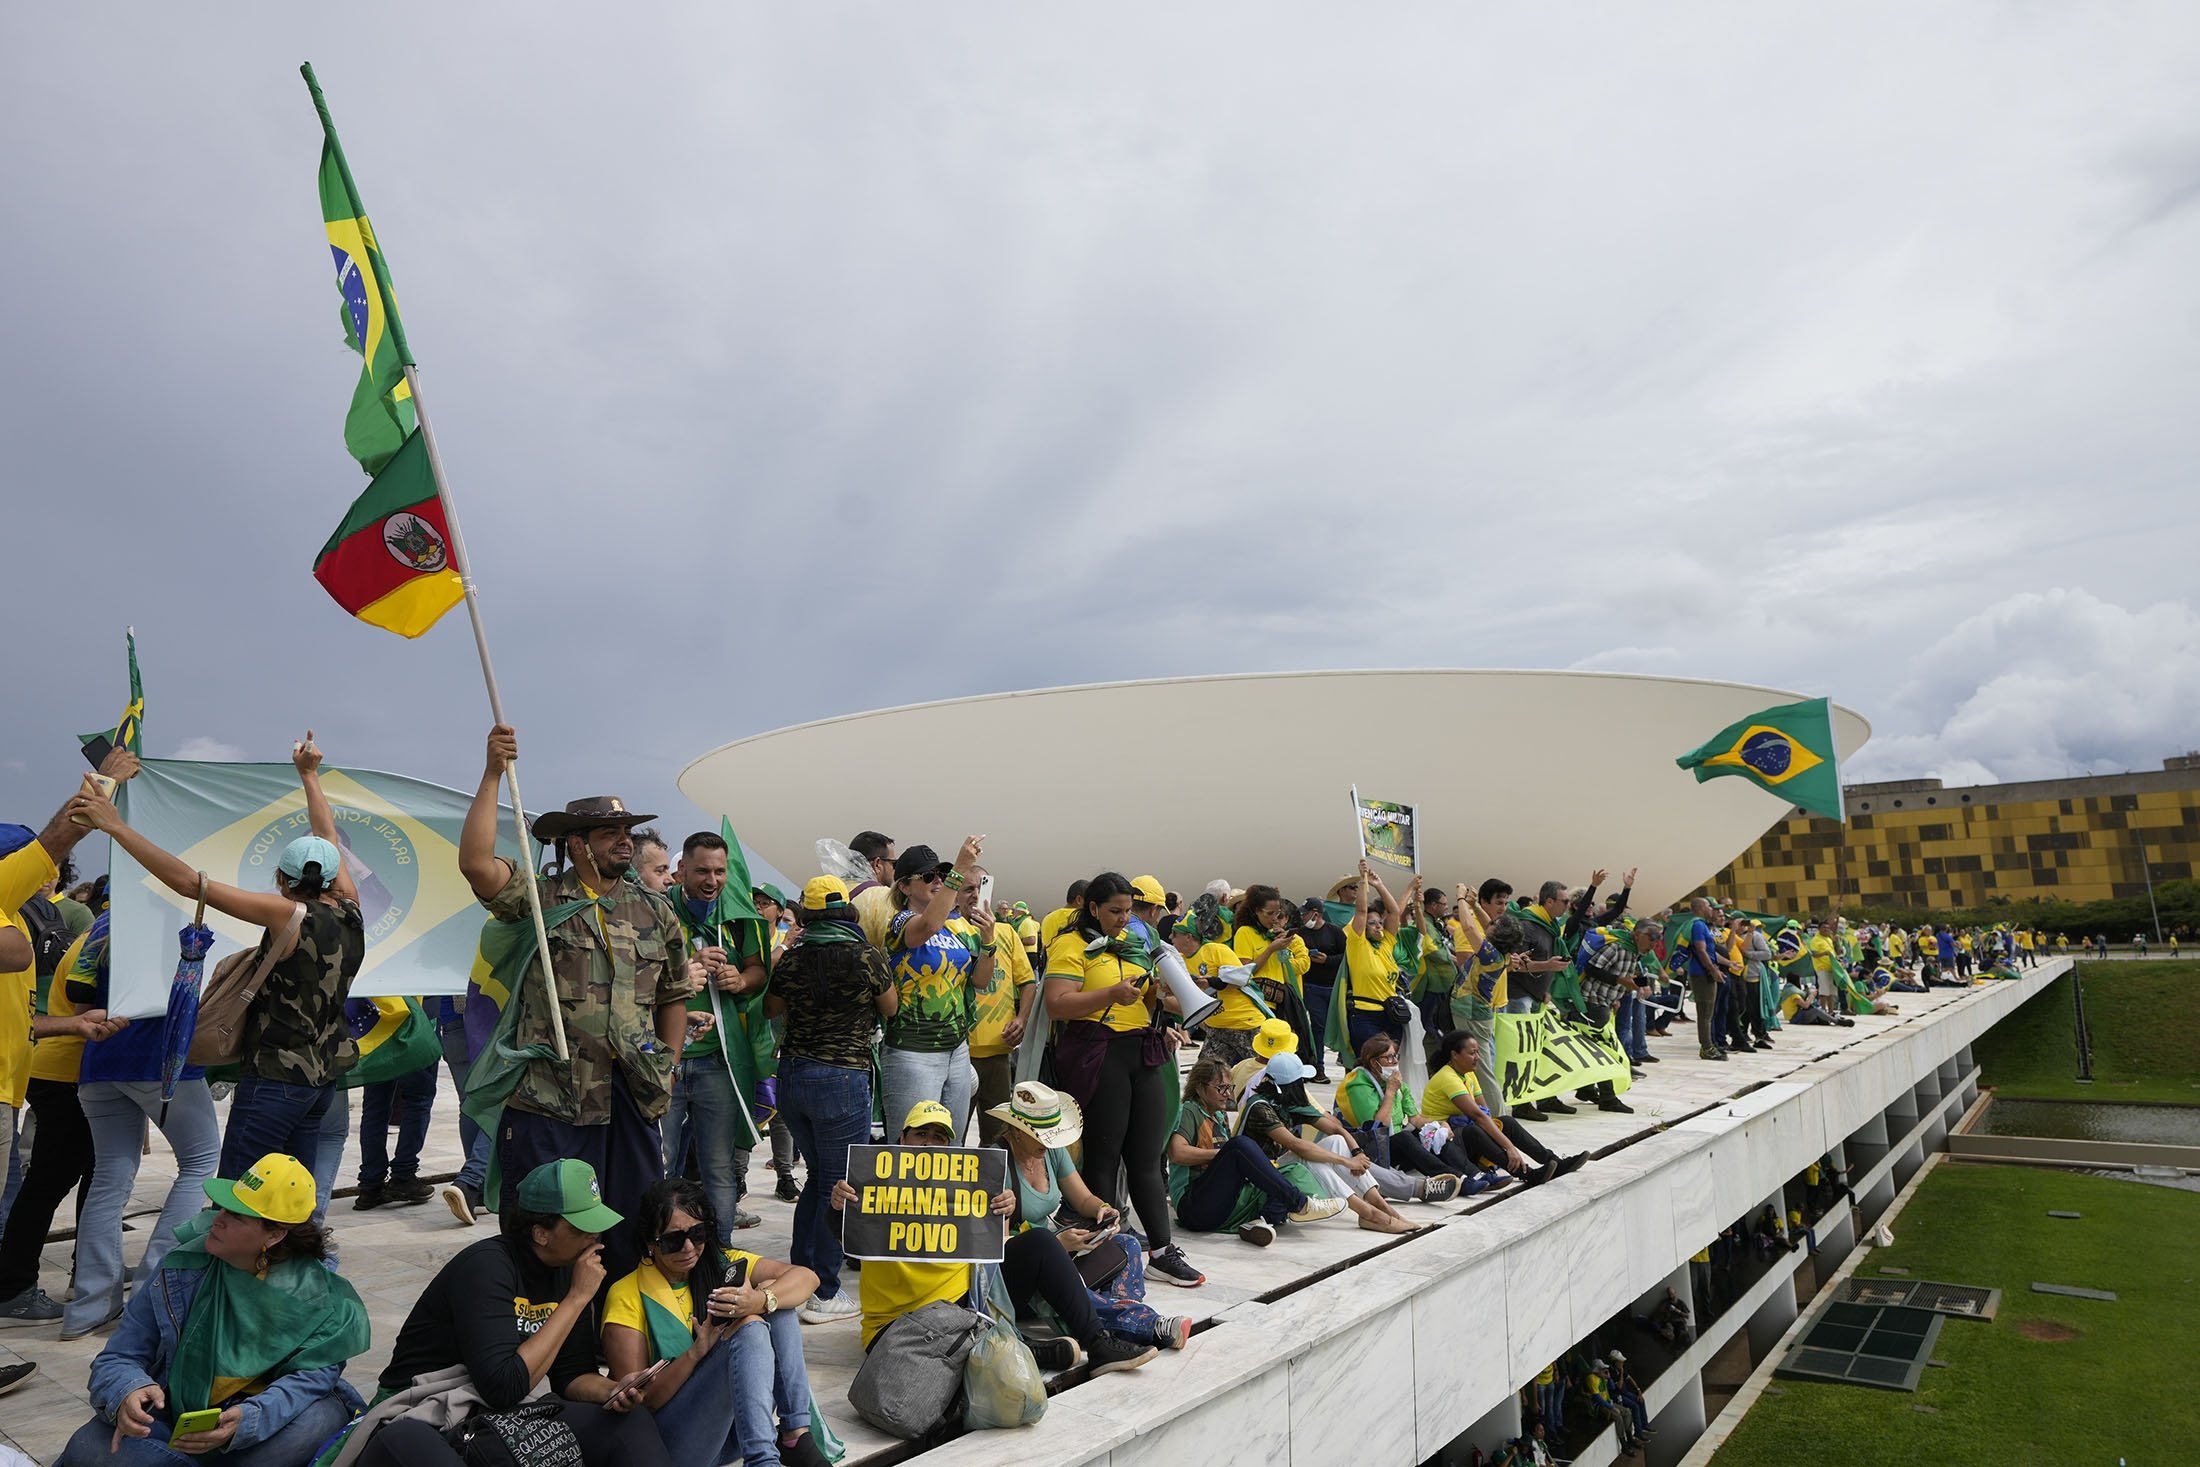 Brezilya'nın eski Devlet Başkanı Jair Bolsonaro'nun destekçileri olan protestocular, 8 Ocak 2023'te Brezilya'nın Brasilia kentinde Ulusal Kongre binasına baskın düzenledikten sonra çatısında duruyorlar. (AP Fotoğrafı)